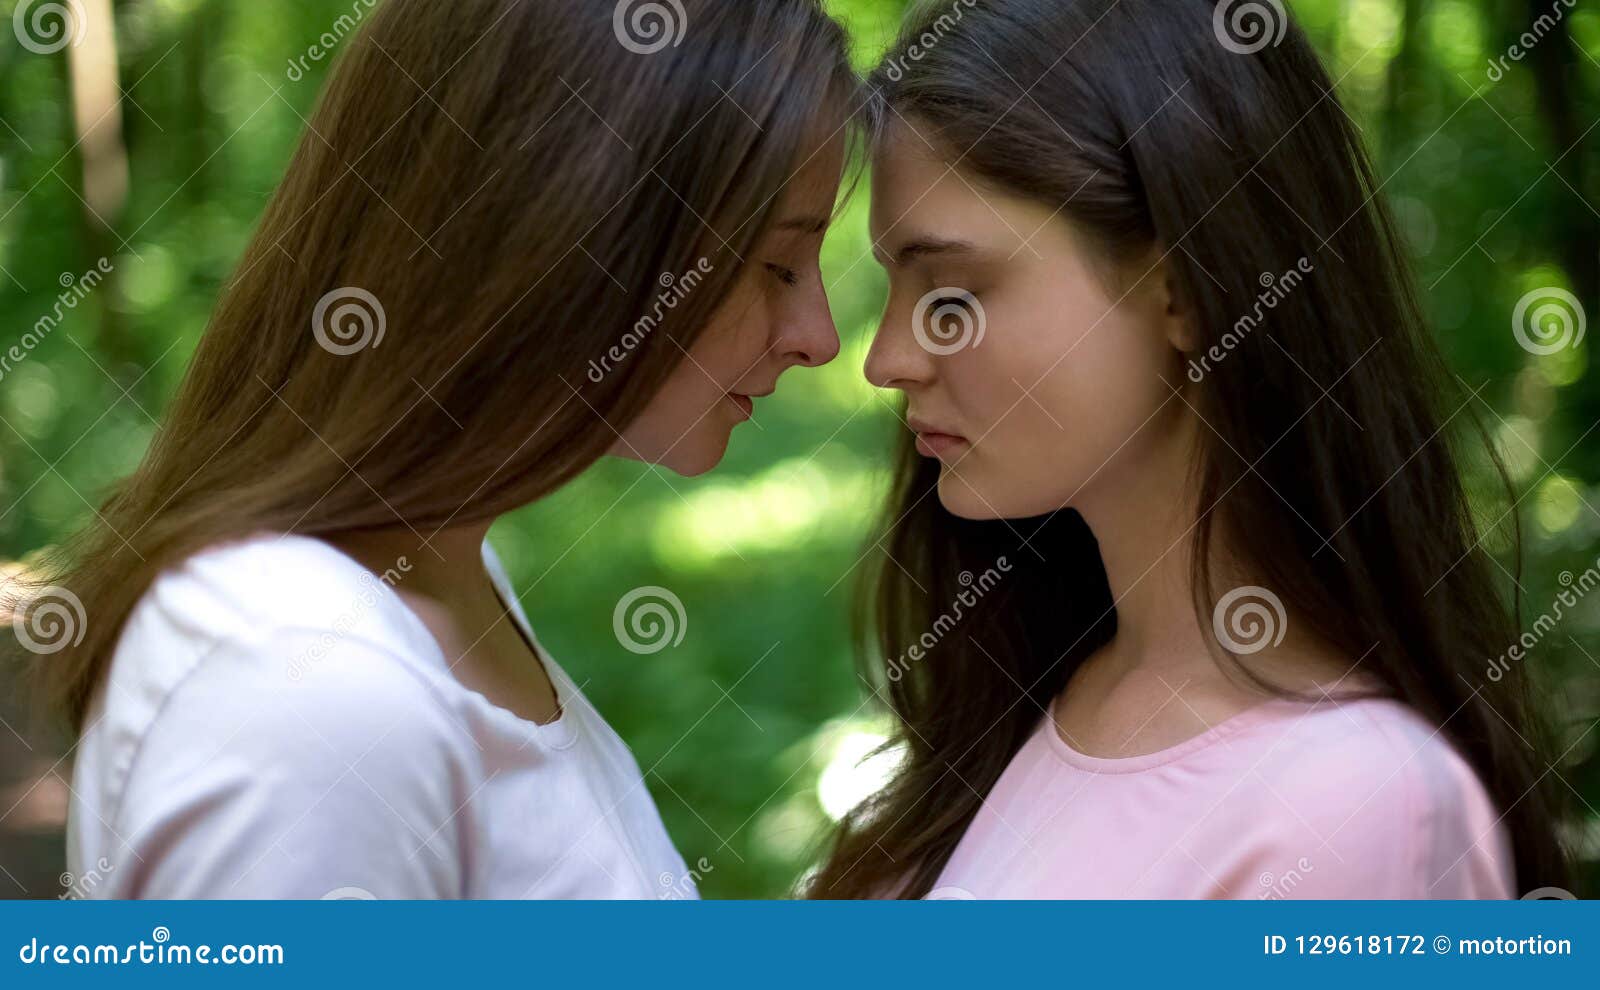 Фото Лесбийский поцелуй, более 89 качественных бесплатных стоковых фото